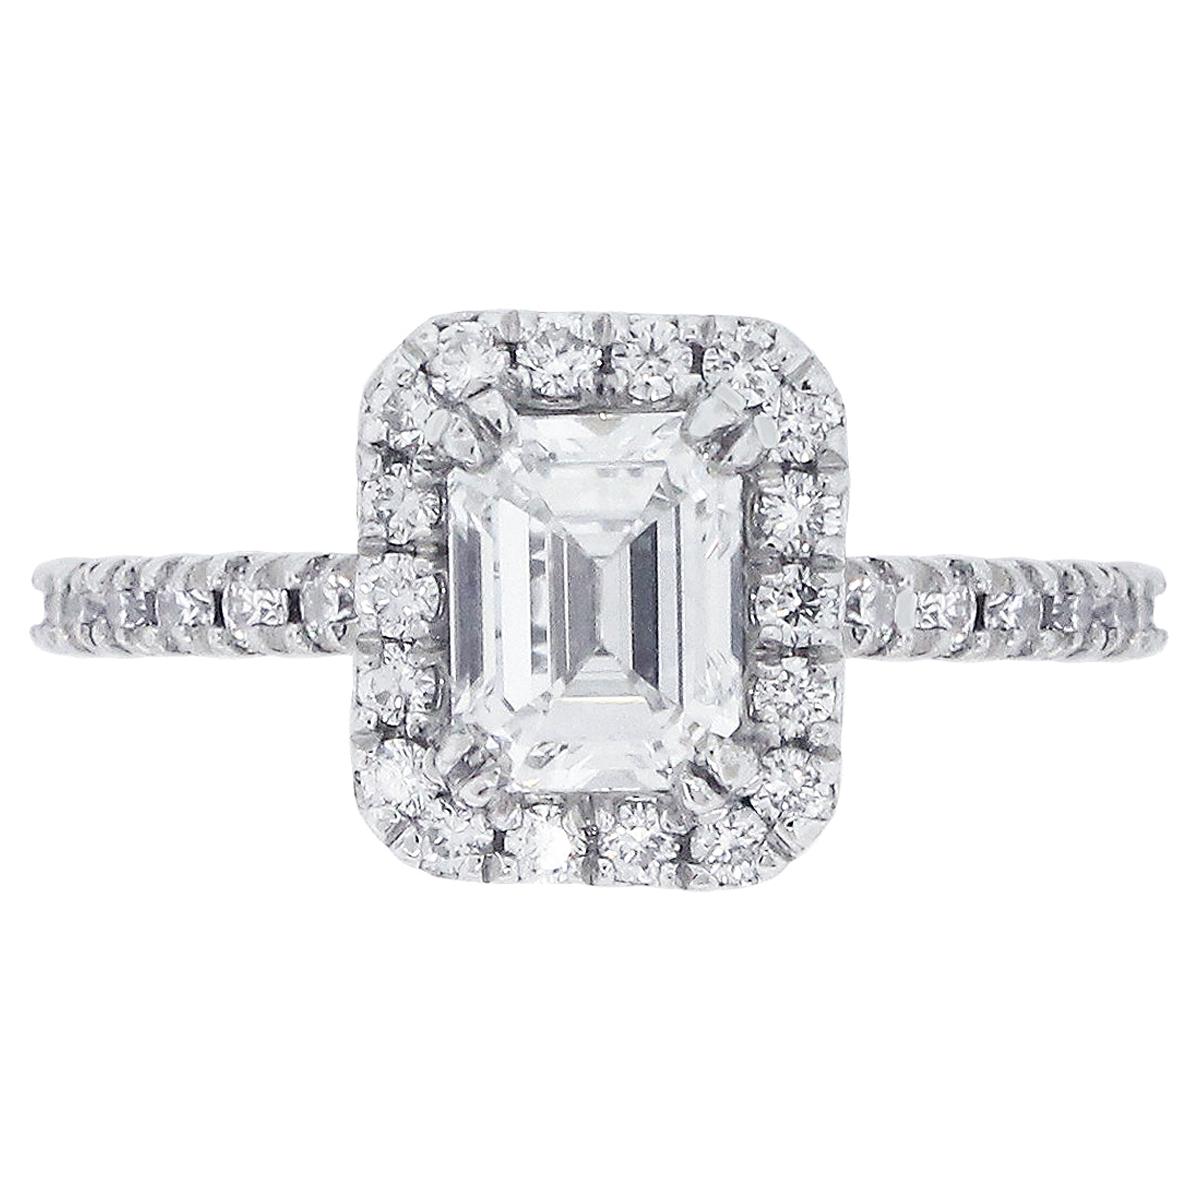 GIA Certified 0.83 Carat Diamond Engagement Ring